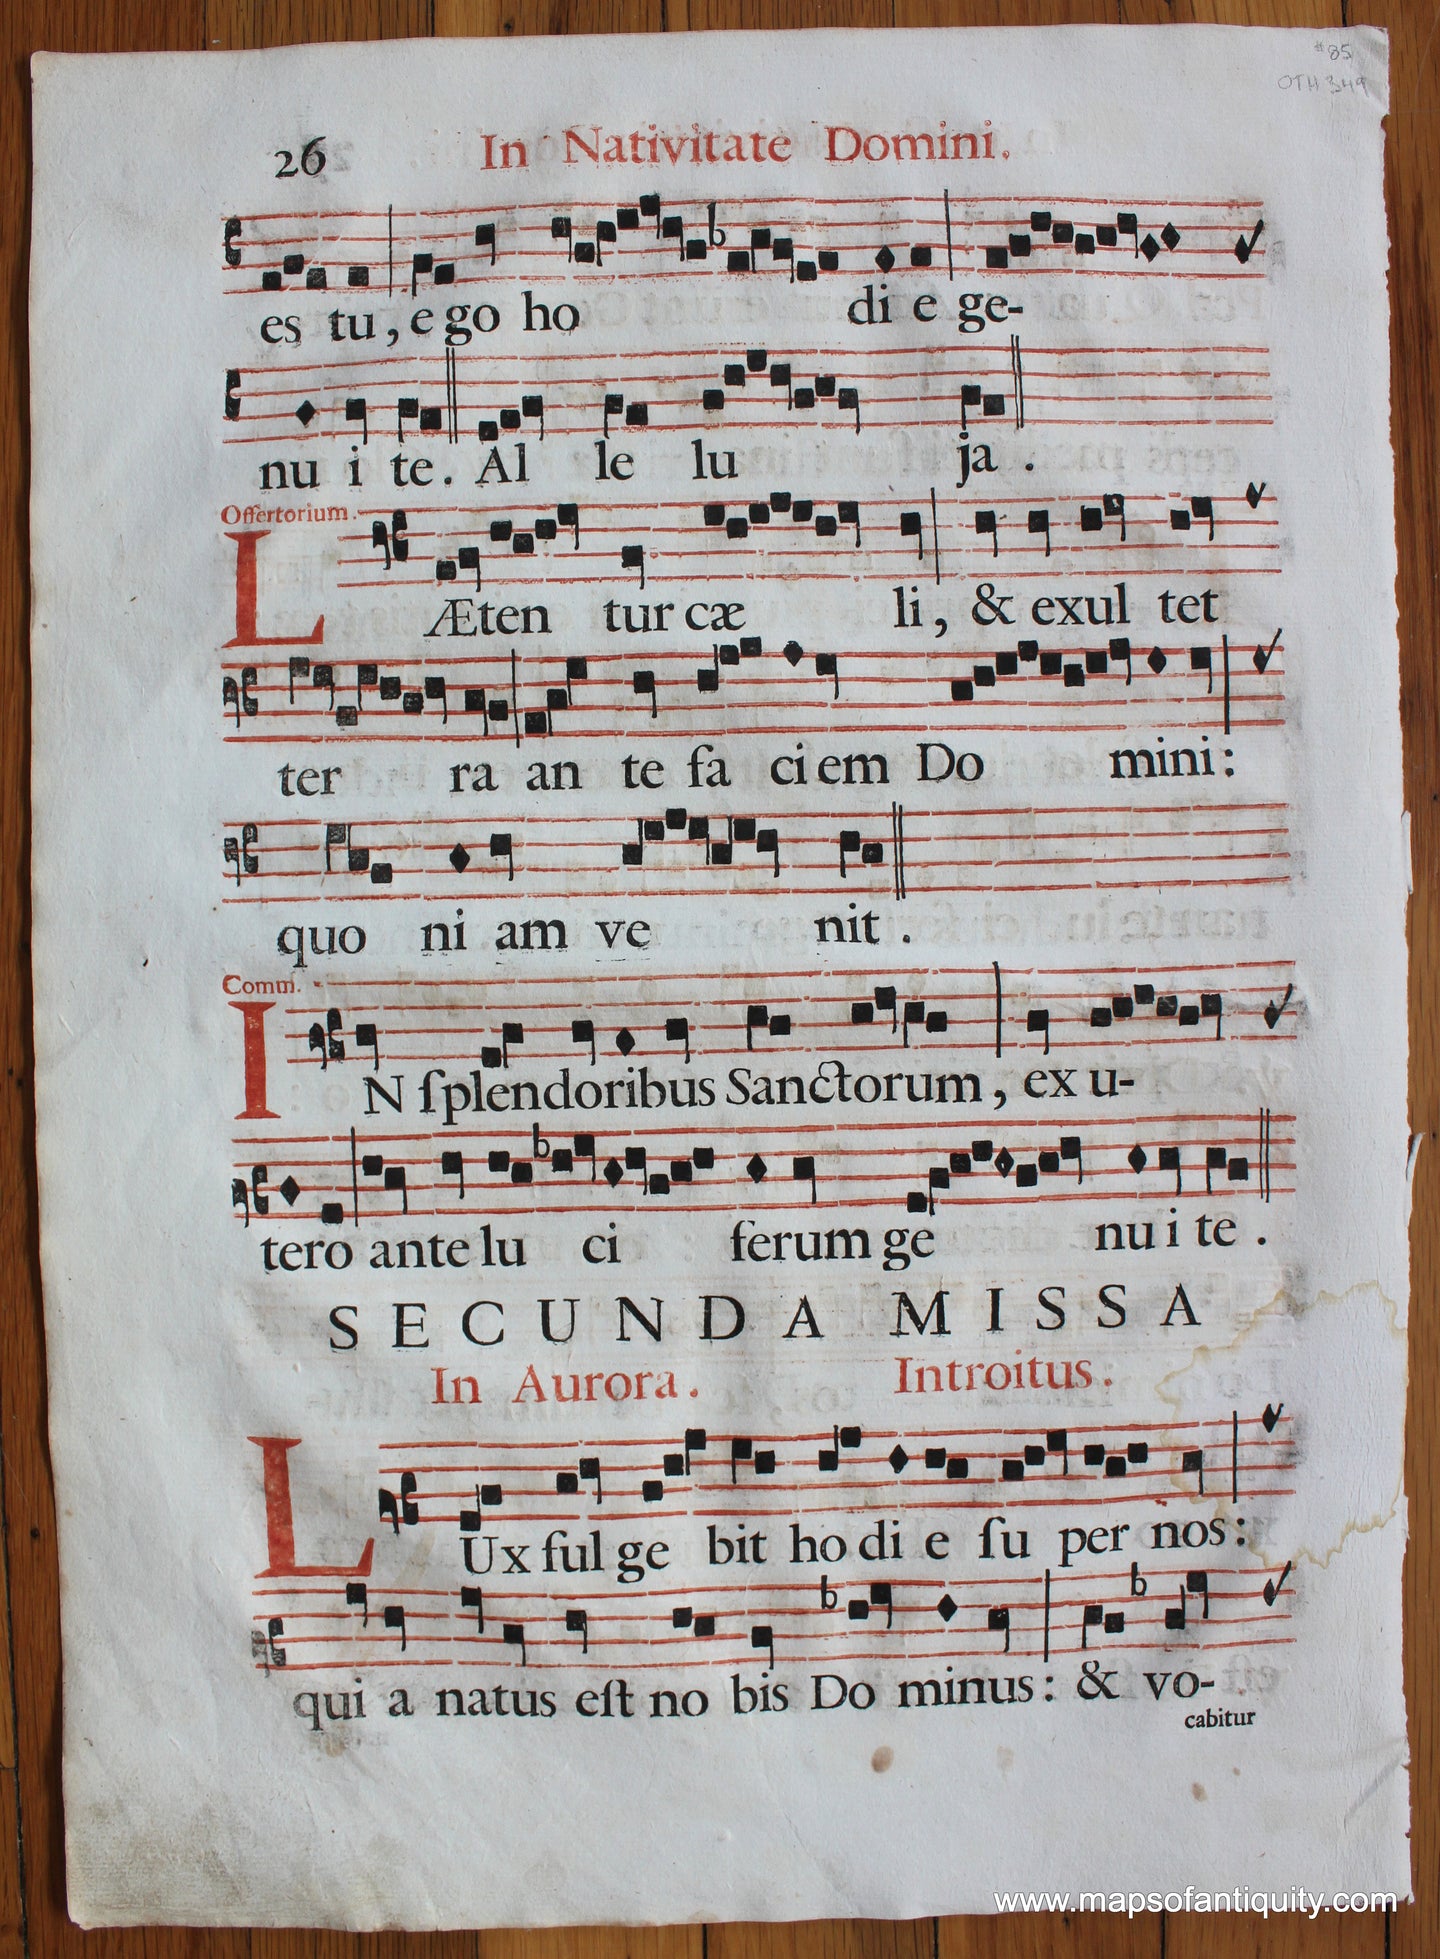 Antique-Sheet-Music-on-Paper-Antique-Sheet-Music-In-nocte-Nativitatis-Domini-c.-16th-century-Unknown-Antique-Sheet-Music-1500s-16th-century-Maps-of-Antiquity